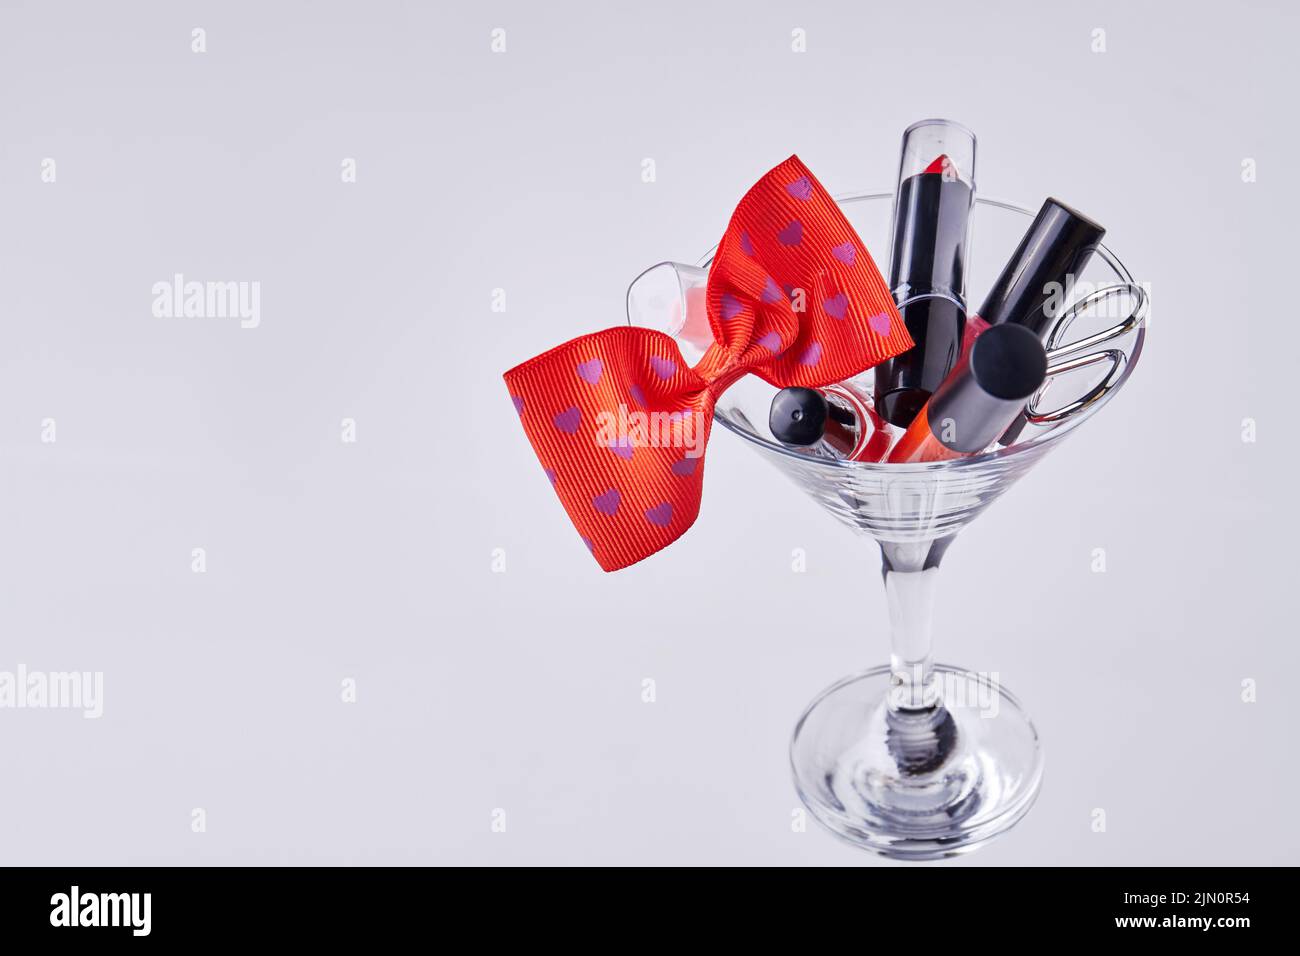 Accesorios de maquillaje y pajarita roja en copa de cóctel. Aislado sobre fondo blanco. Foto de stock